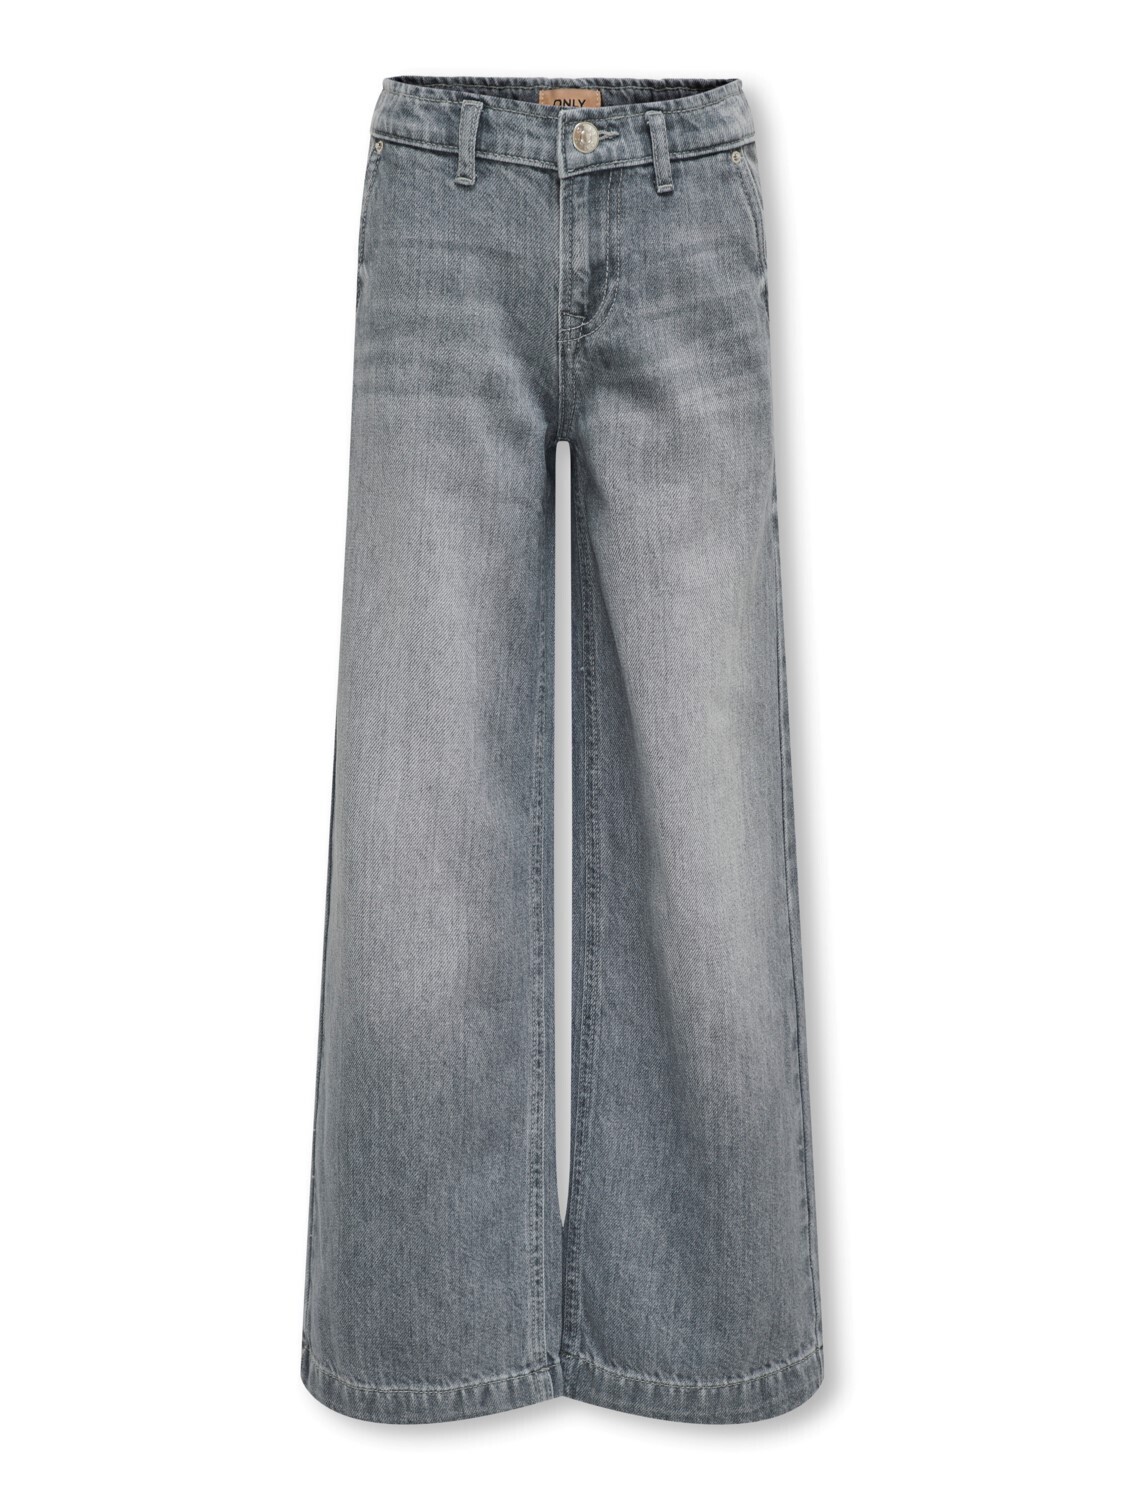 KIDS Wijde jeans - COMET - medium grey denim